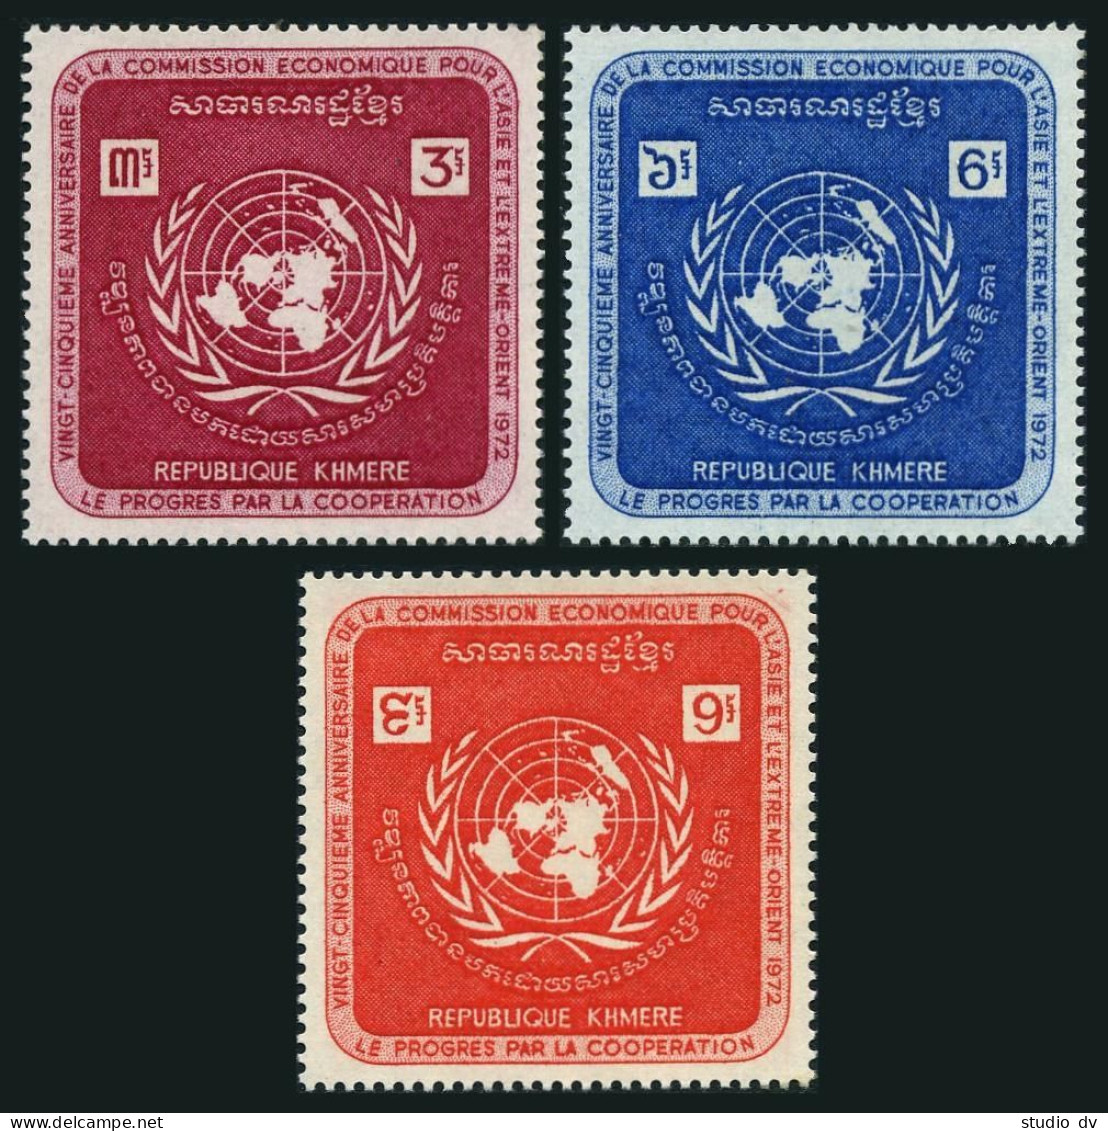 Cambodia 278-280,MNH.Michel 321-323. UN Economic Commission ECAFE,1972. - Kambodscha